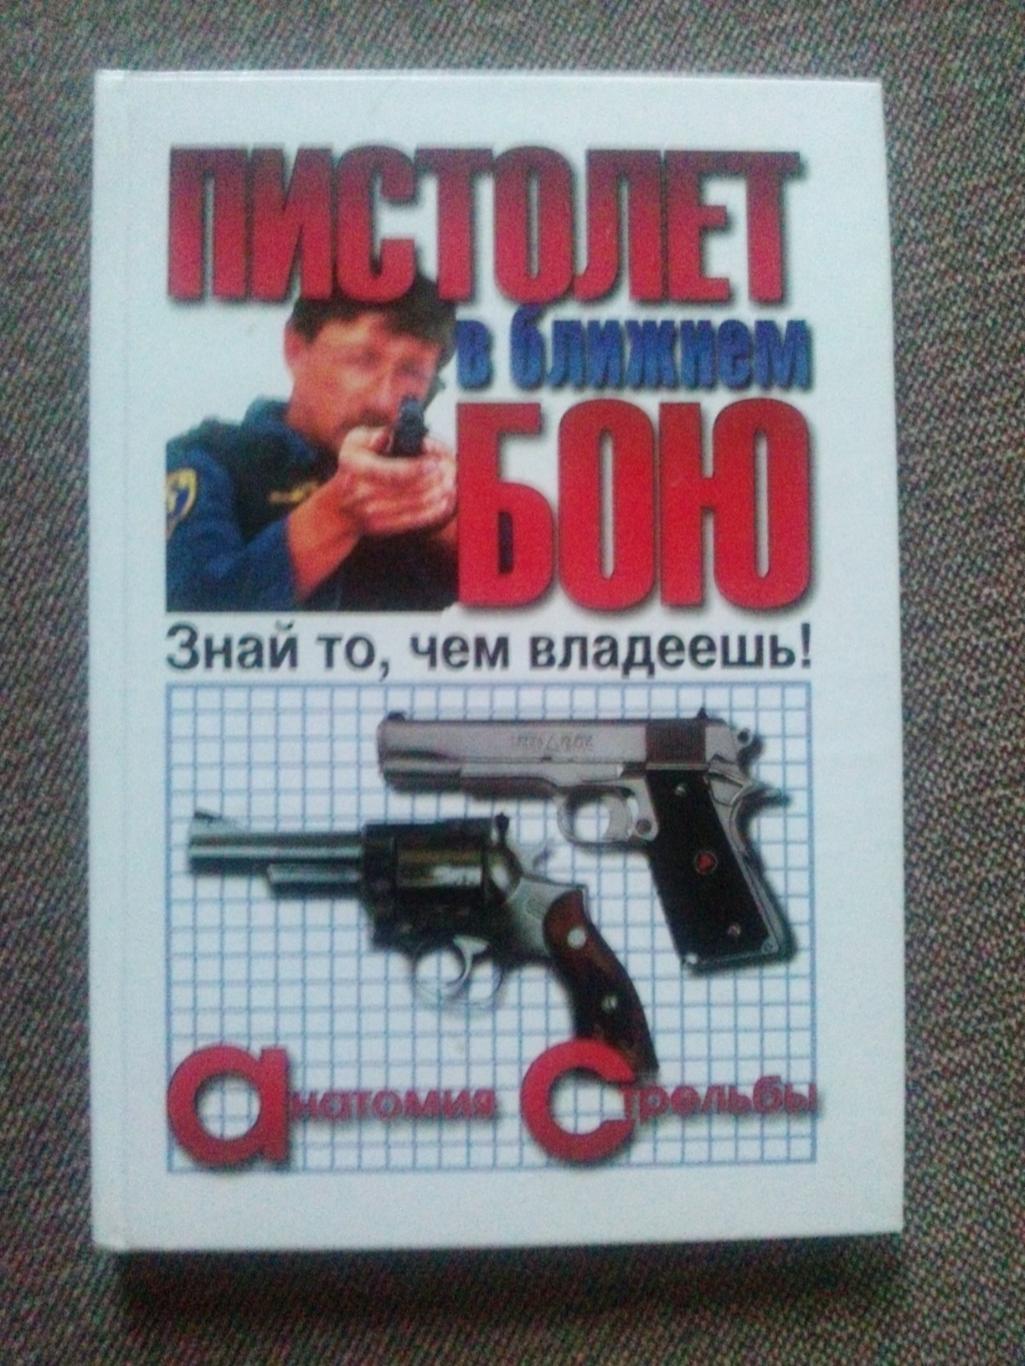 Пистолет в ближнем бою -Анатомия стрельбы2000 г. ( Оружие , стрельба )